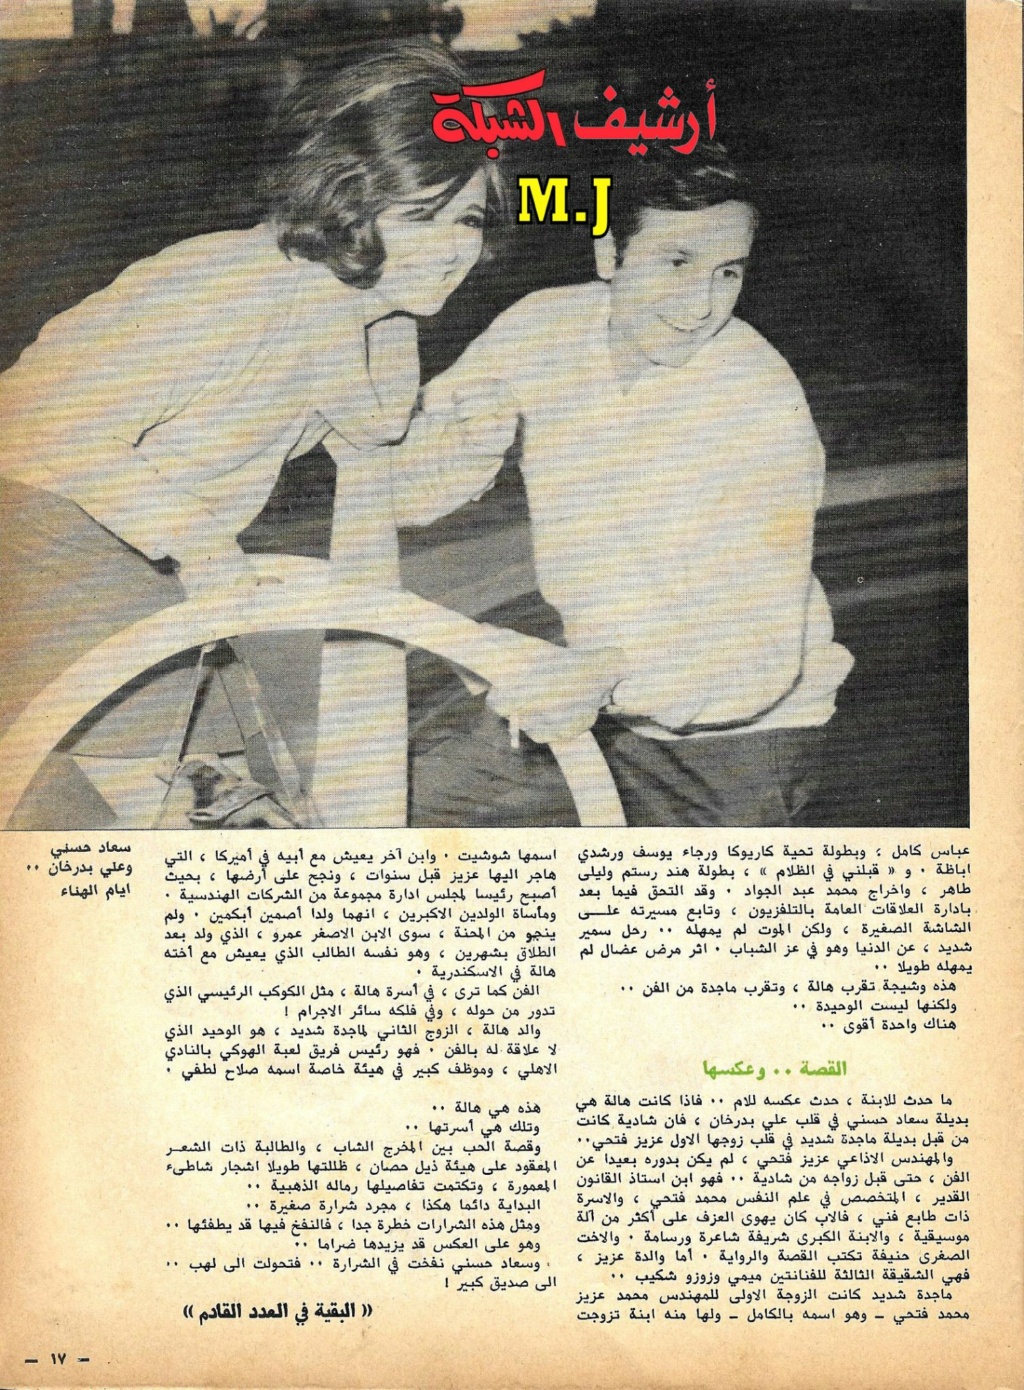 1981 - مقال صحفي : سعاد حسني وعلي بدرخان وقصة الحب الذي كان 1981 م 415